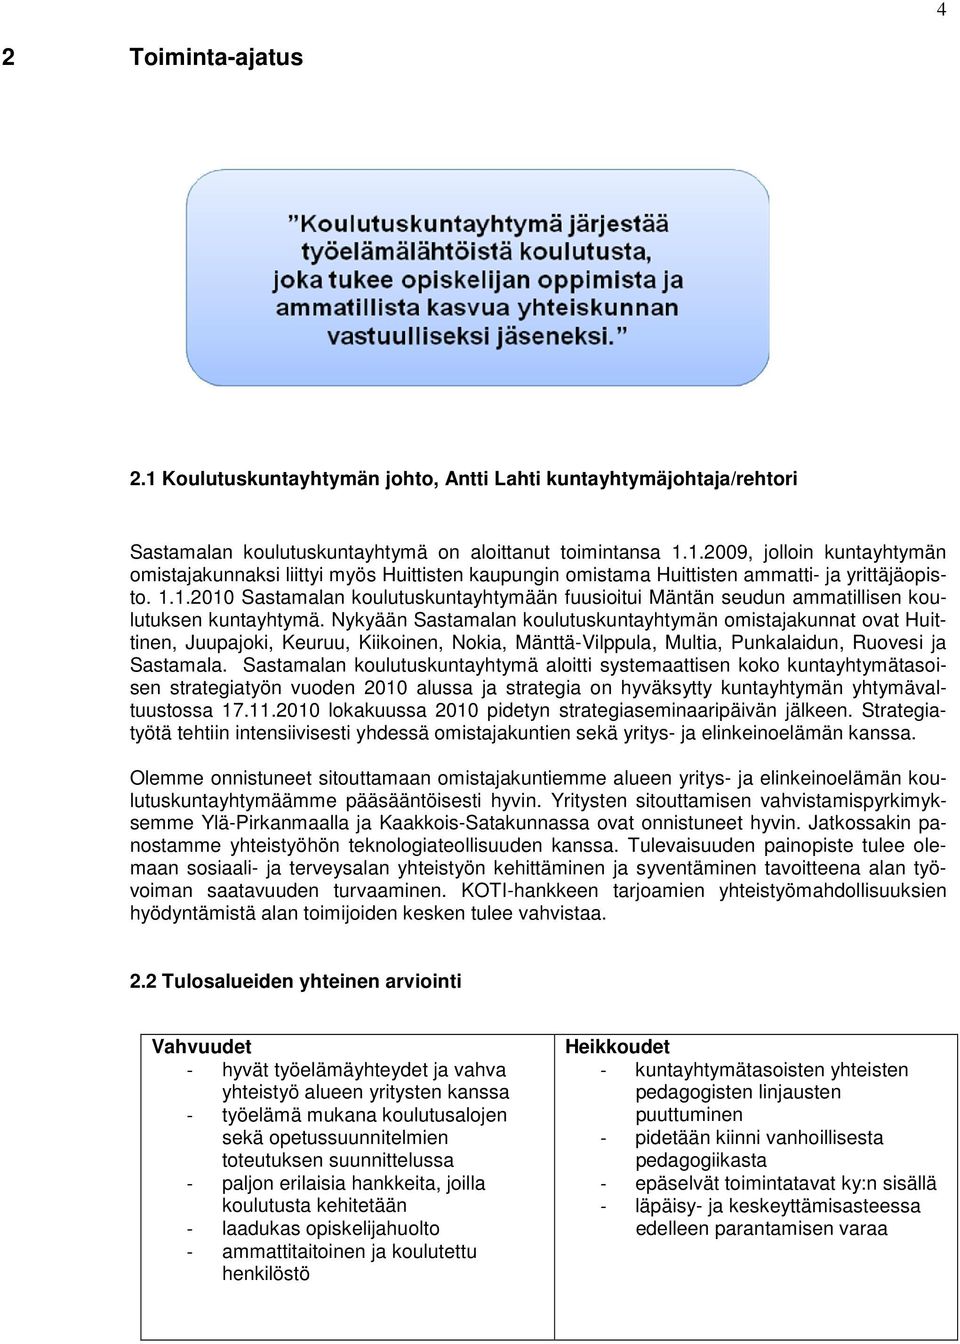 Nykyään Sastamalan koulutuskuntayhtymän omistajakunnat ovat Huittinen, Juupajoki, Keuruu, Kiikoinen, Nokia, Mänttä-Vilppula, Multia, Punkalaidun, Ruovesi ja Sastamala.